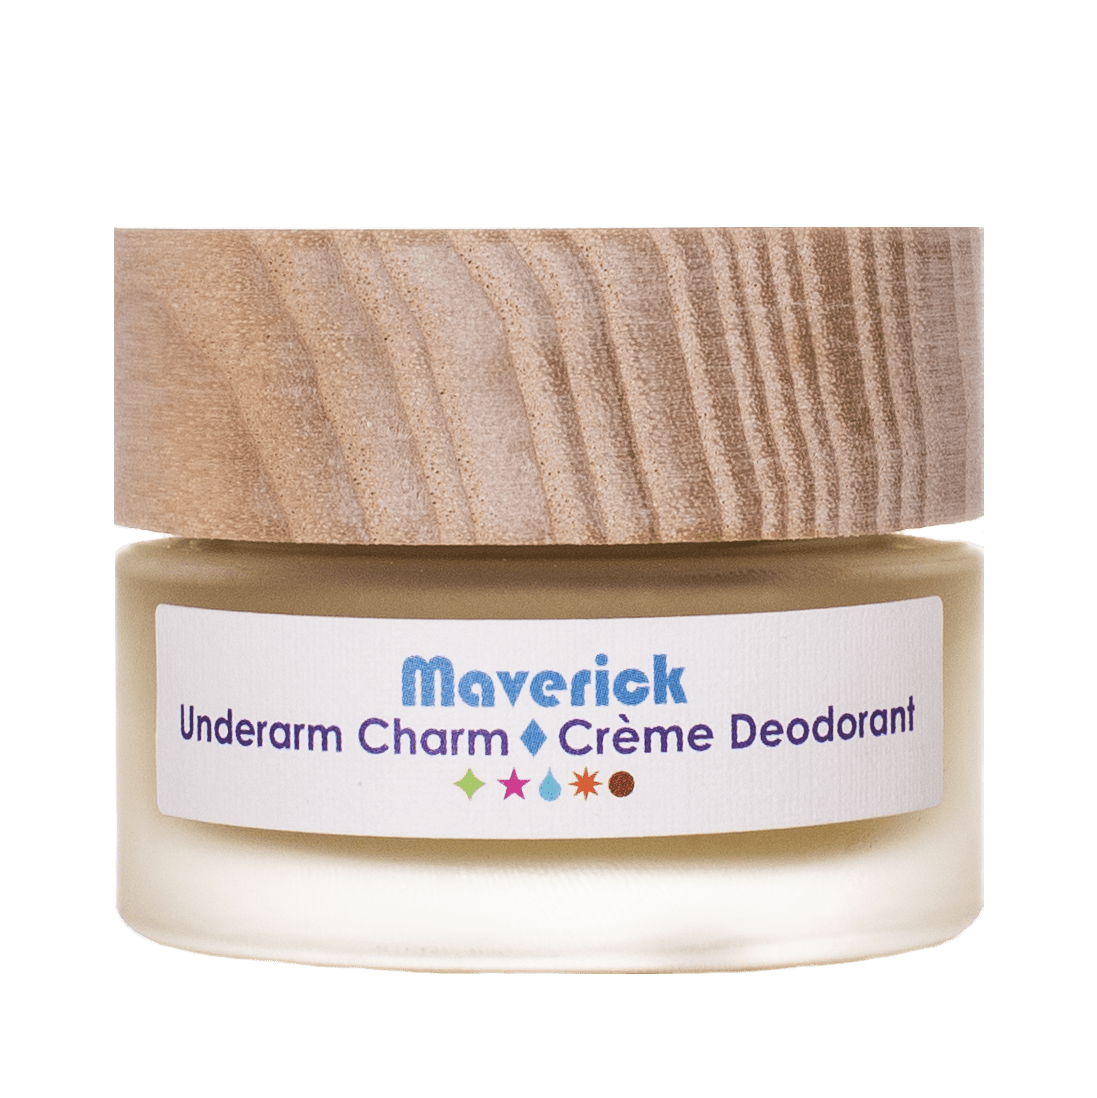 Living Libations Deodorant Underarm Charm Crème Deodorant - Maverick sunja link - canada